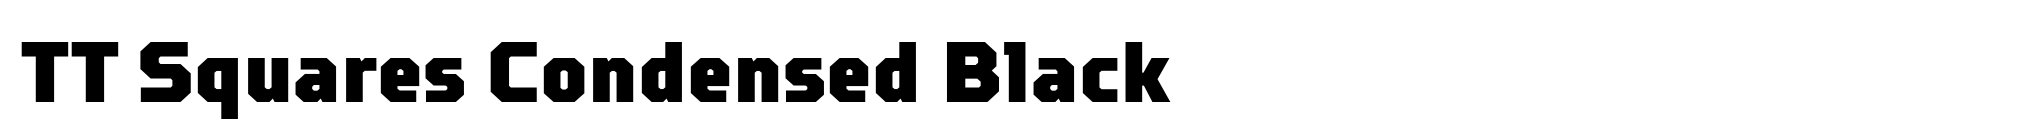 TT Squares Condensed Black image